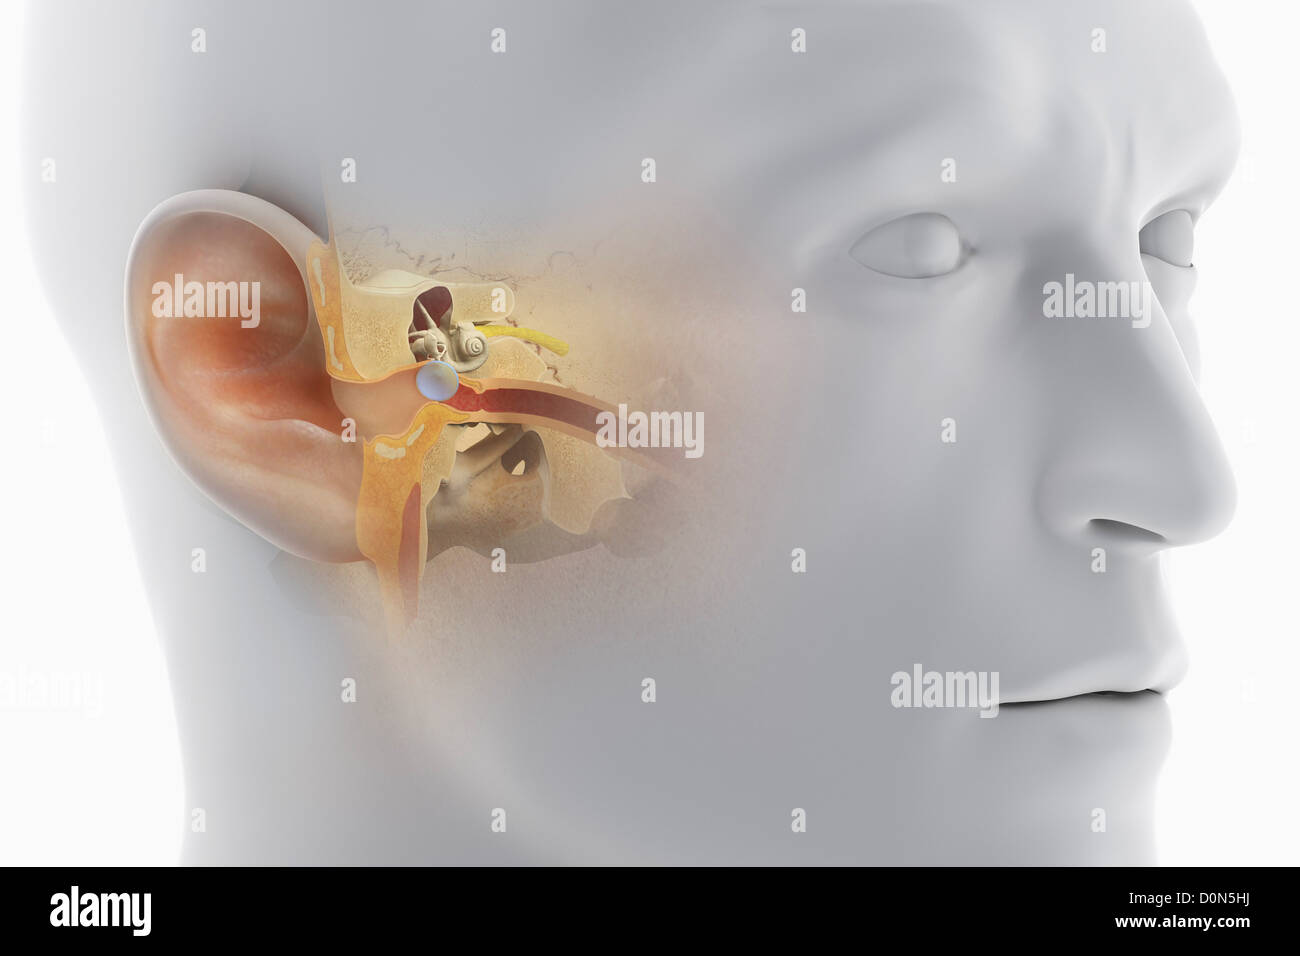 Une vue en coupe de la tête, révélant l'anatomie du canal auditif et de l'anatomie de l'oreille interne. Banque D'Images